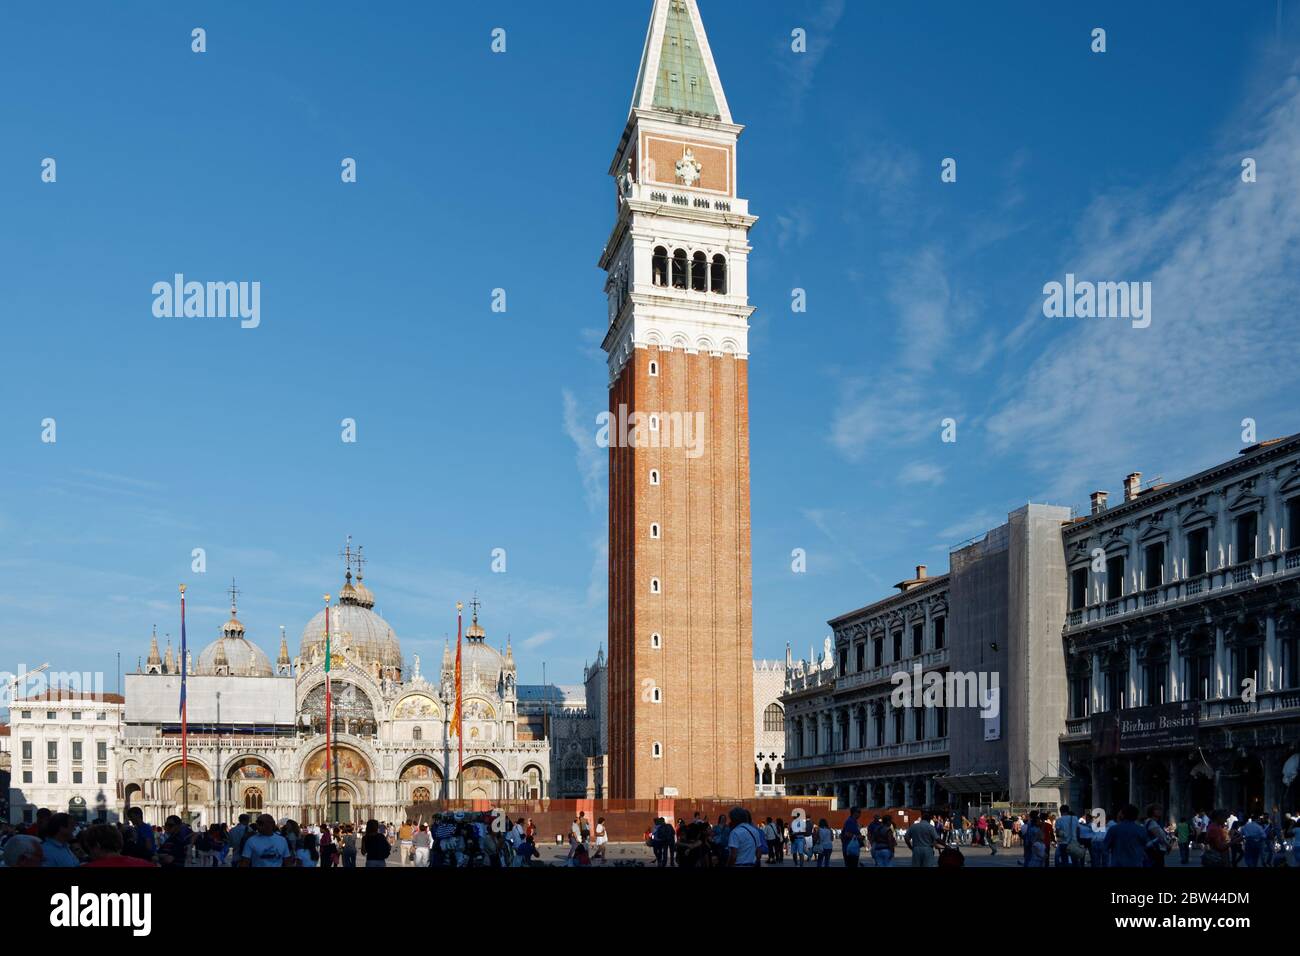 26,2011 de septiembre: Basílica de San Marcos, fragmento del Palacio Ducal y el Campanile San Marco en la Piazza San Marco, con multitud de turistas. Foto de stock